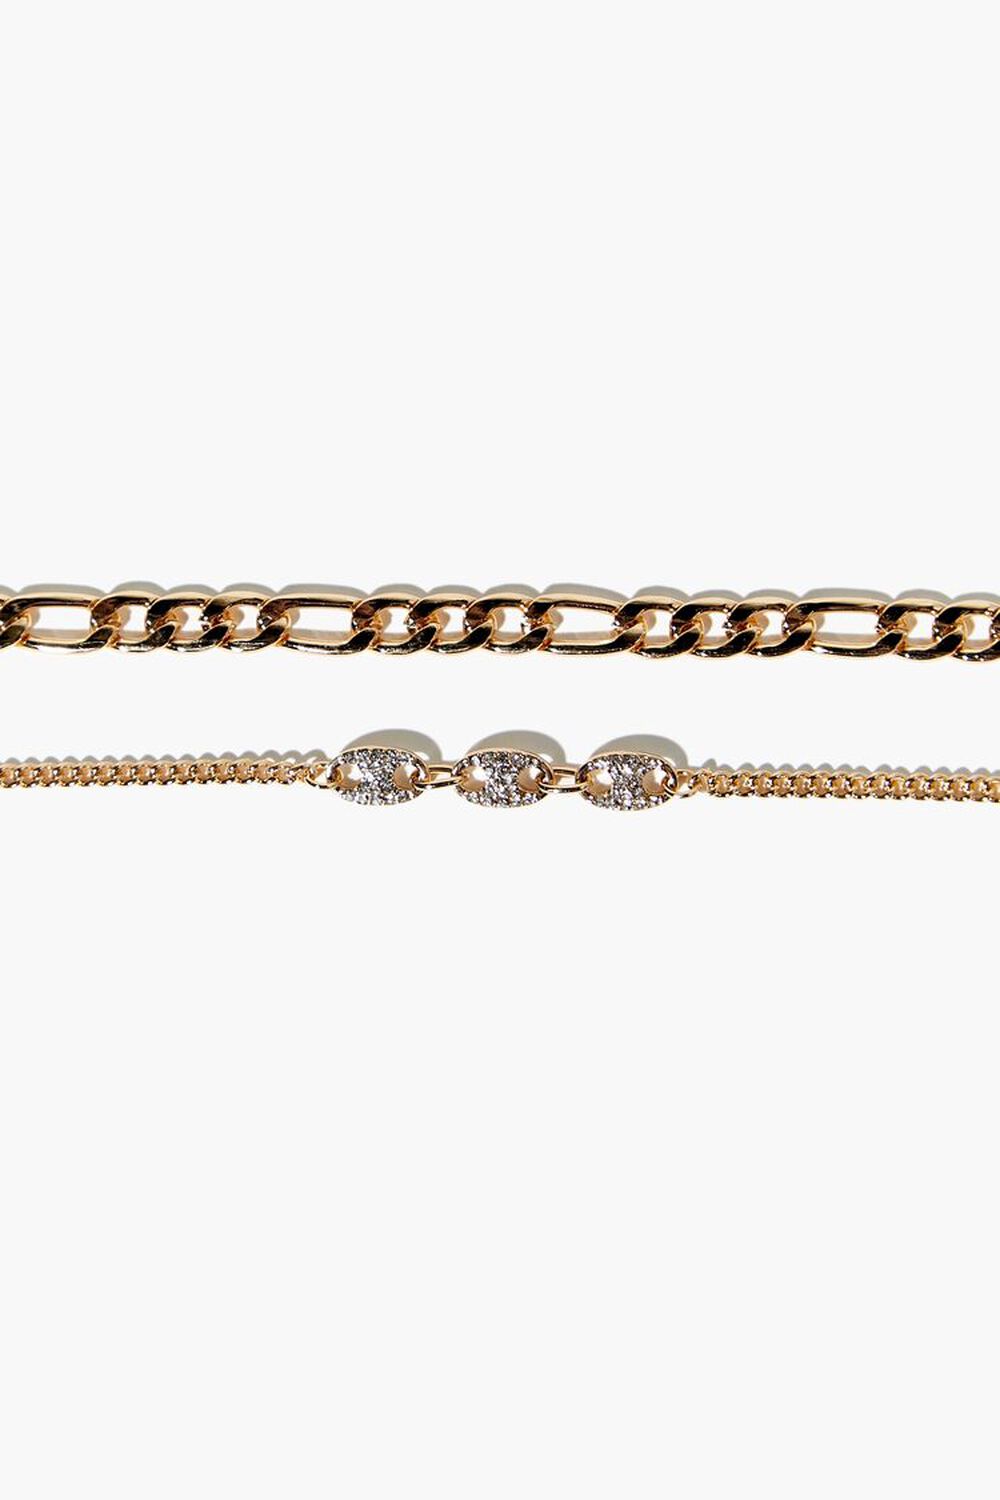 GOLD Curb Chain Bracelet Set, image 2